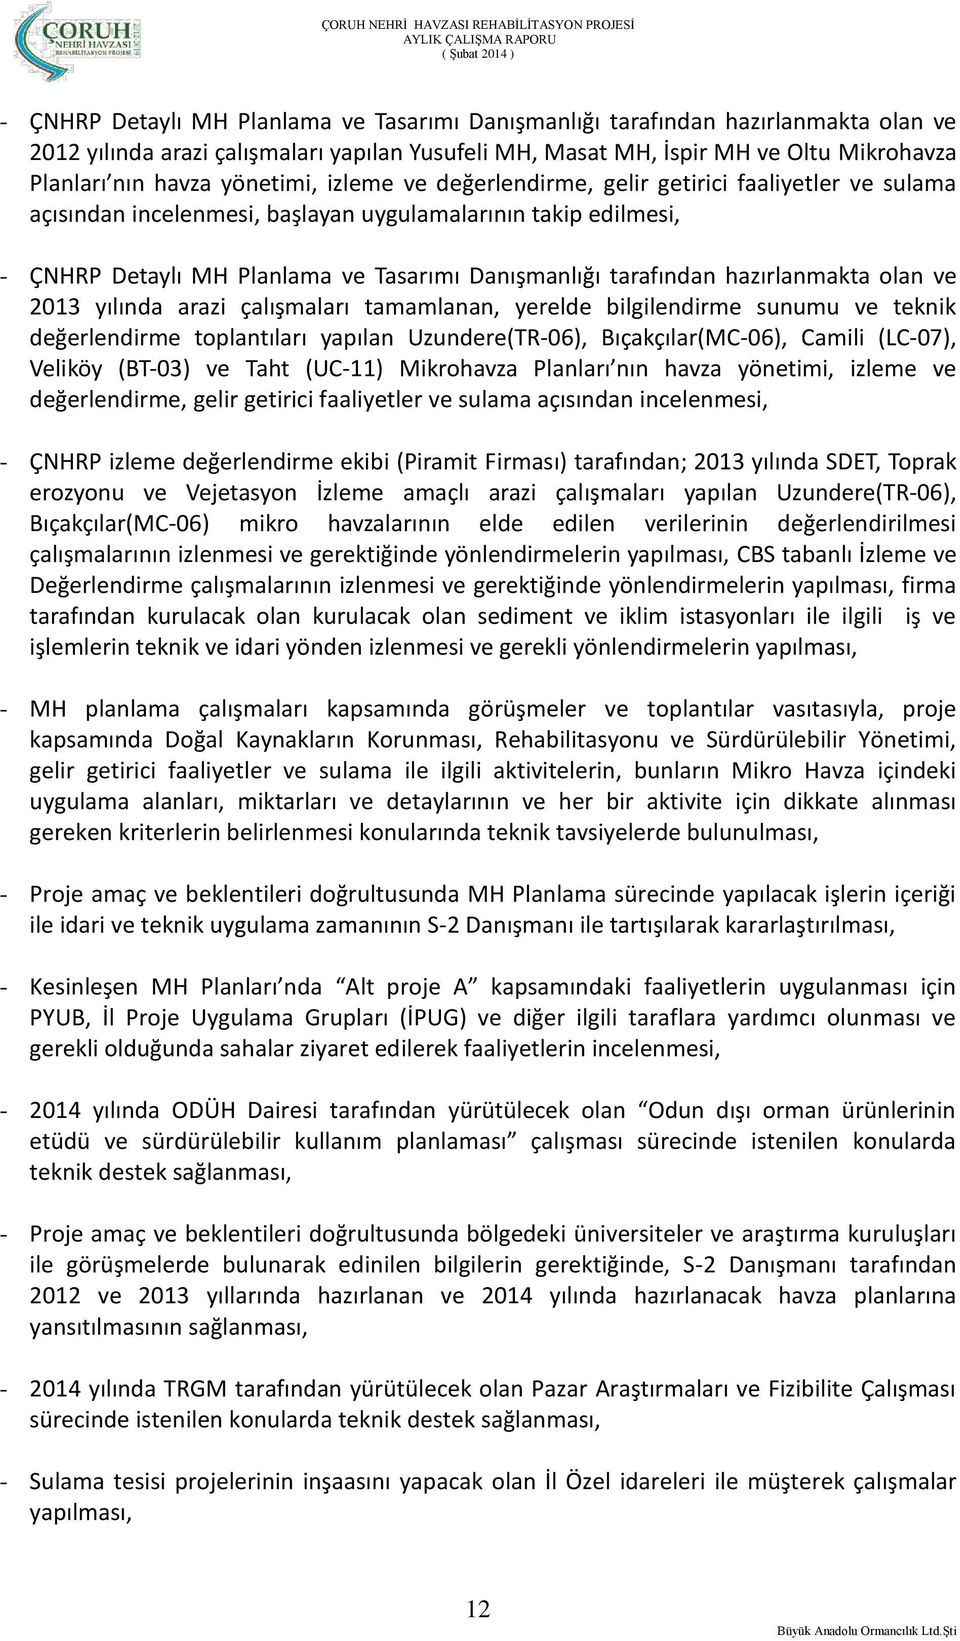 hazırlanmakta olan ve 2013 yılında arazi çalışmaları tamamlanan, yerelde bilgilendirme sunumu ve teknik değerlendirme toplantıları yapılan Uzundere(TR-06), Bıçakçılar(MC-06), Camili (LC-07), Veliköy